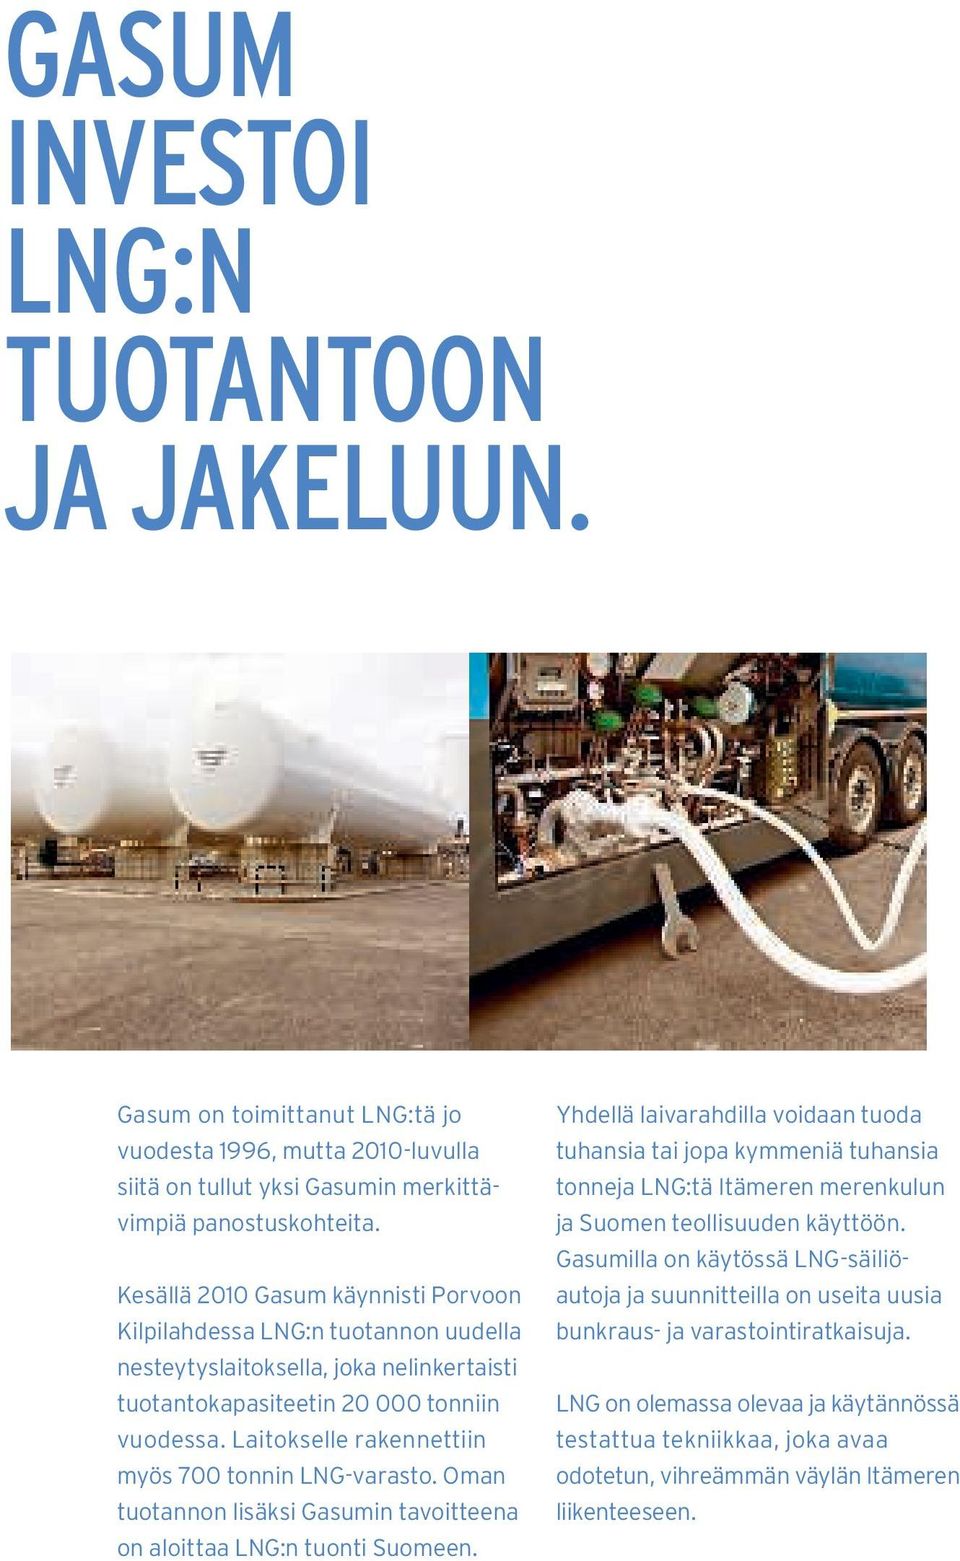 Laitokselle rakennettiin myös 700 tonnin LNG-varasto. Oman tuotannon lisäksi Gasumin tavoitteena on aloittaa LNG:n tuonti Suomeen.